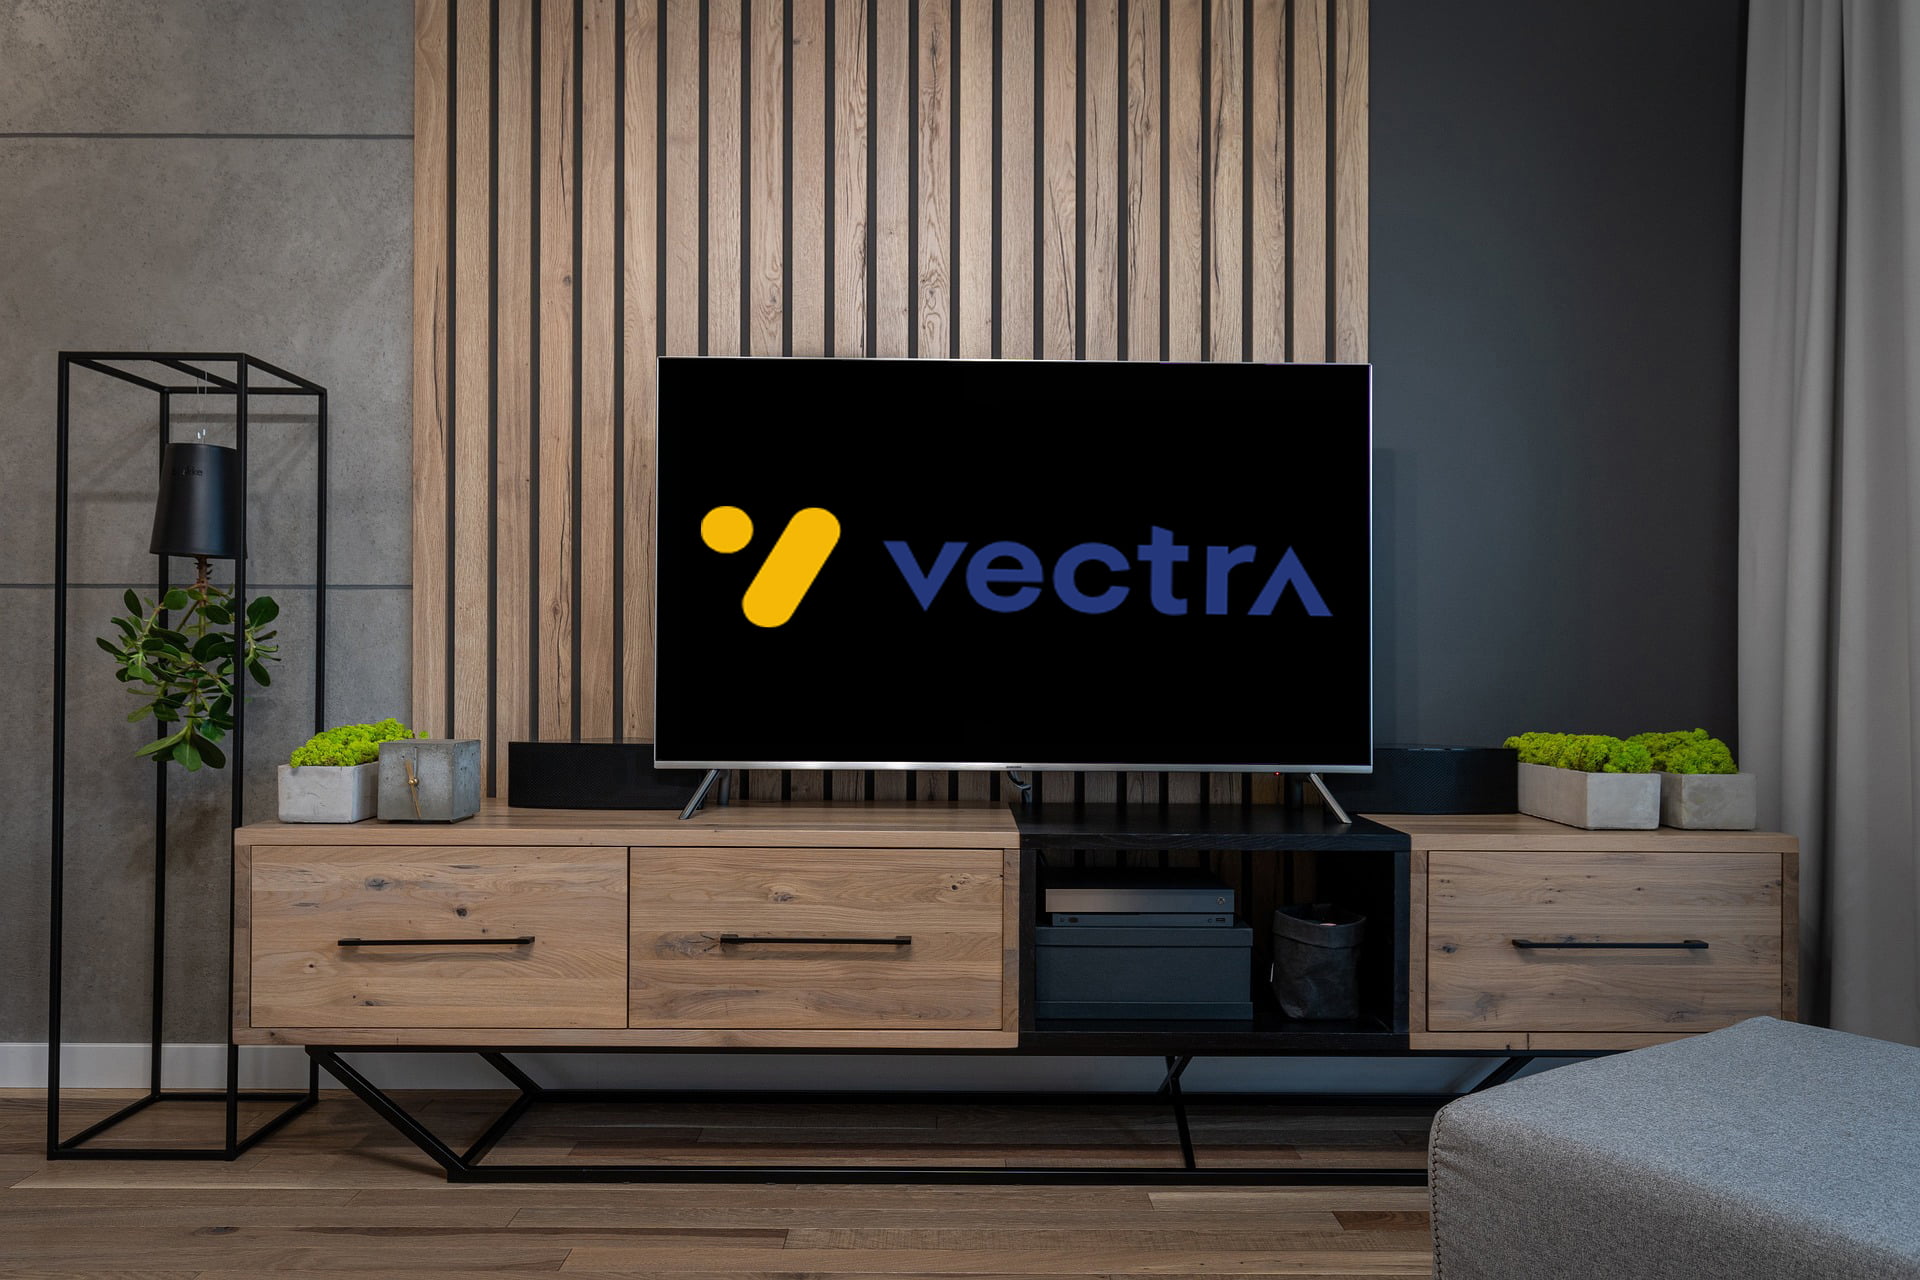 Wnętrze salonu z telewizorem na drewnianej komodzie wyświetlającym logo "vectra", obok doniczki z roślinami i lampa podłogowa, w tle ściana z drewnianymi panelami i szara zasłona.